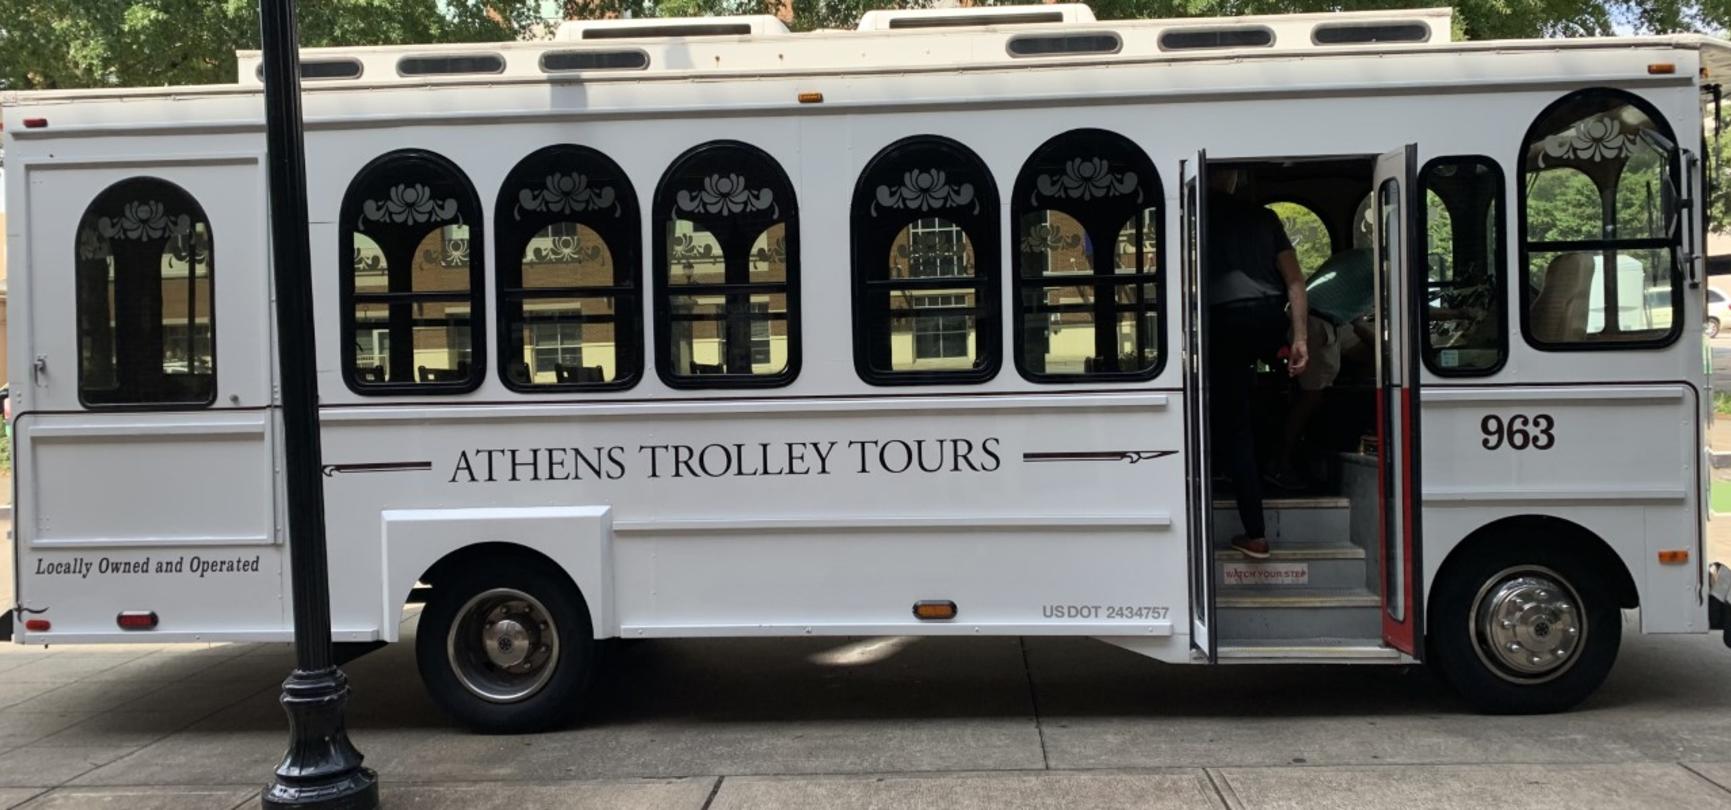 James Dyson Permanent Versnellen The Athens Convention & Visitors Bureau Announces New Beer Trail Trolley  Tour